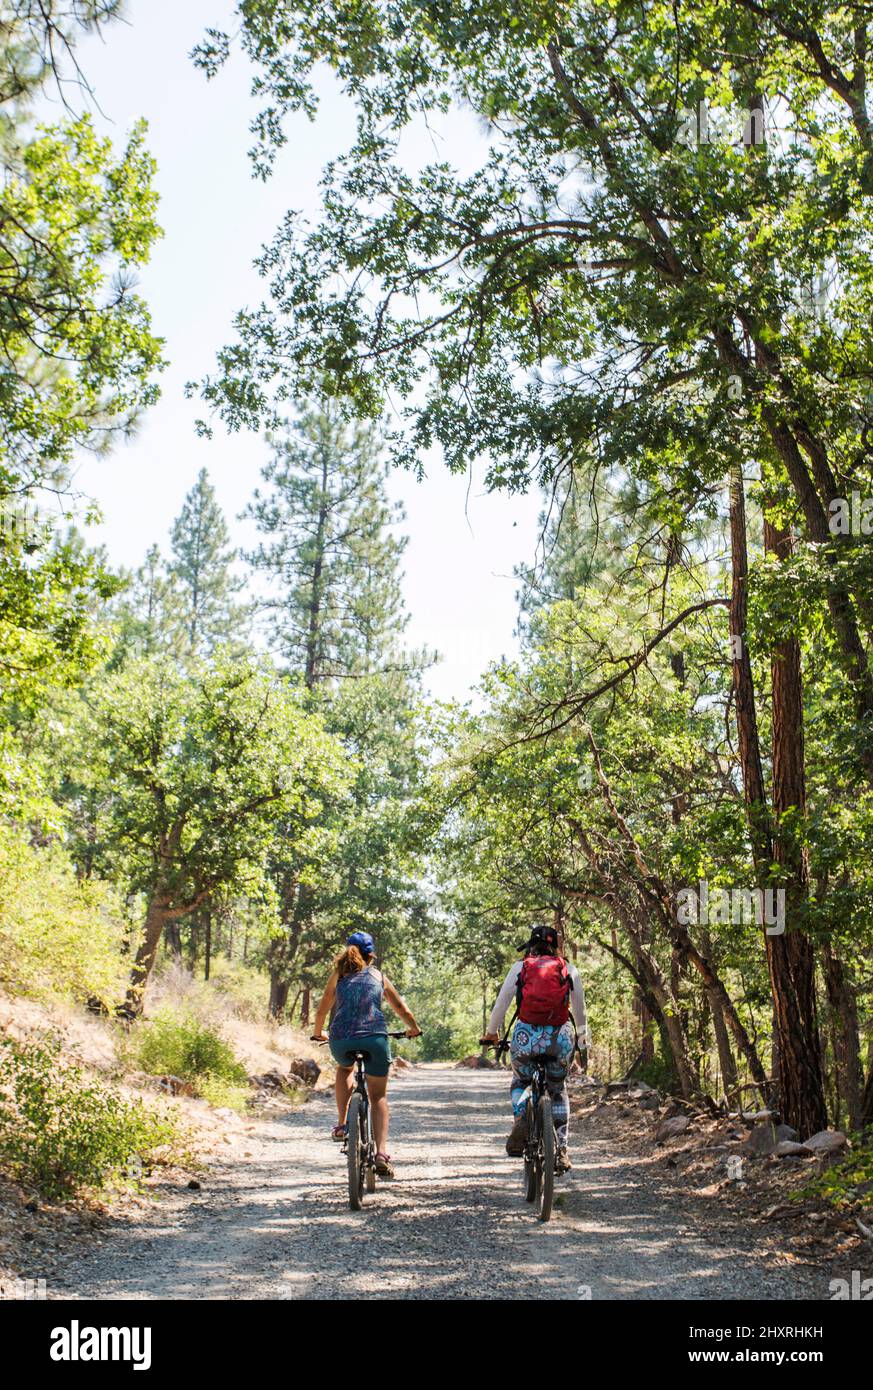 Deux femmes font du vélo sur la route de la terre dans la forêt Banque D'Images